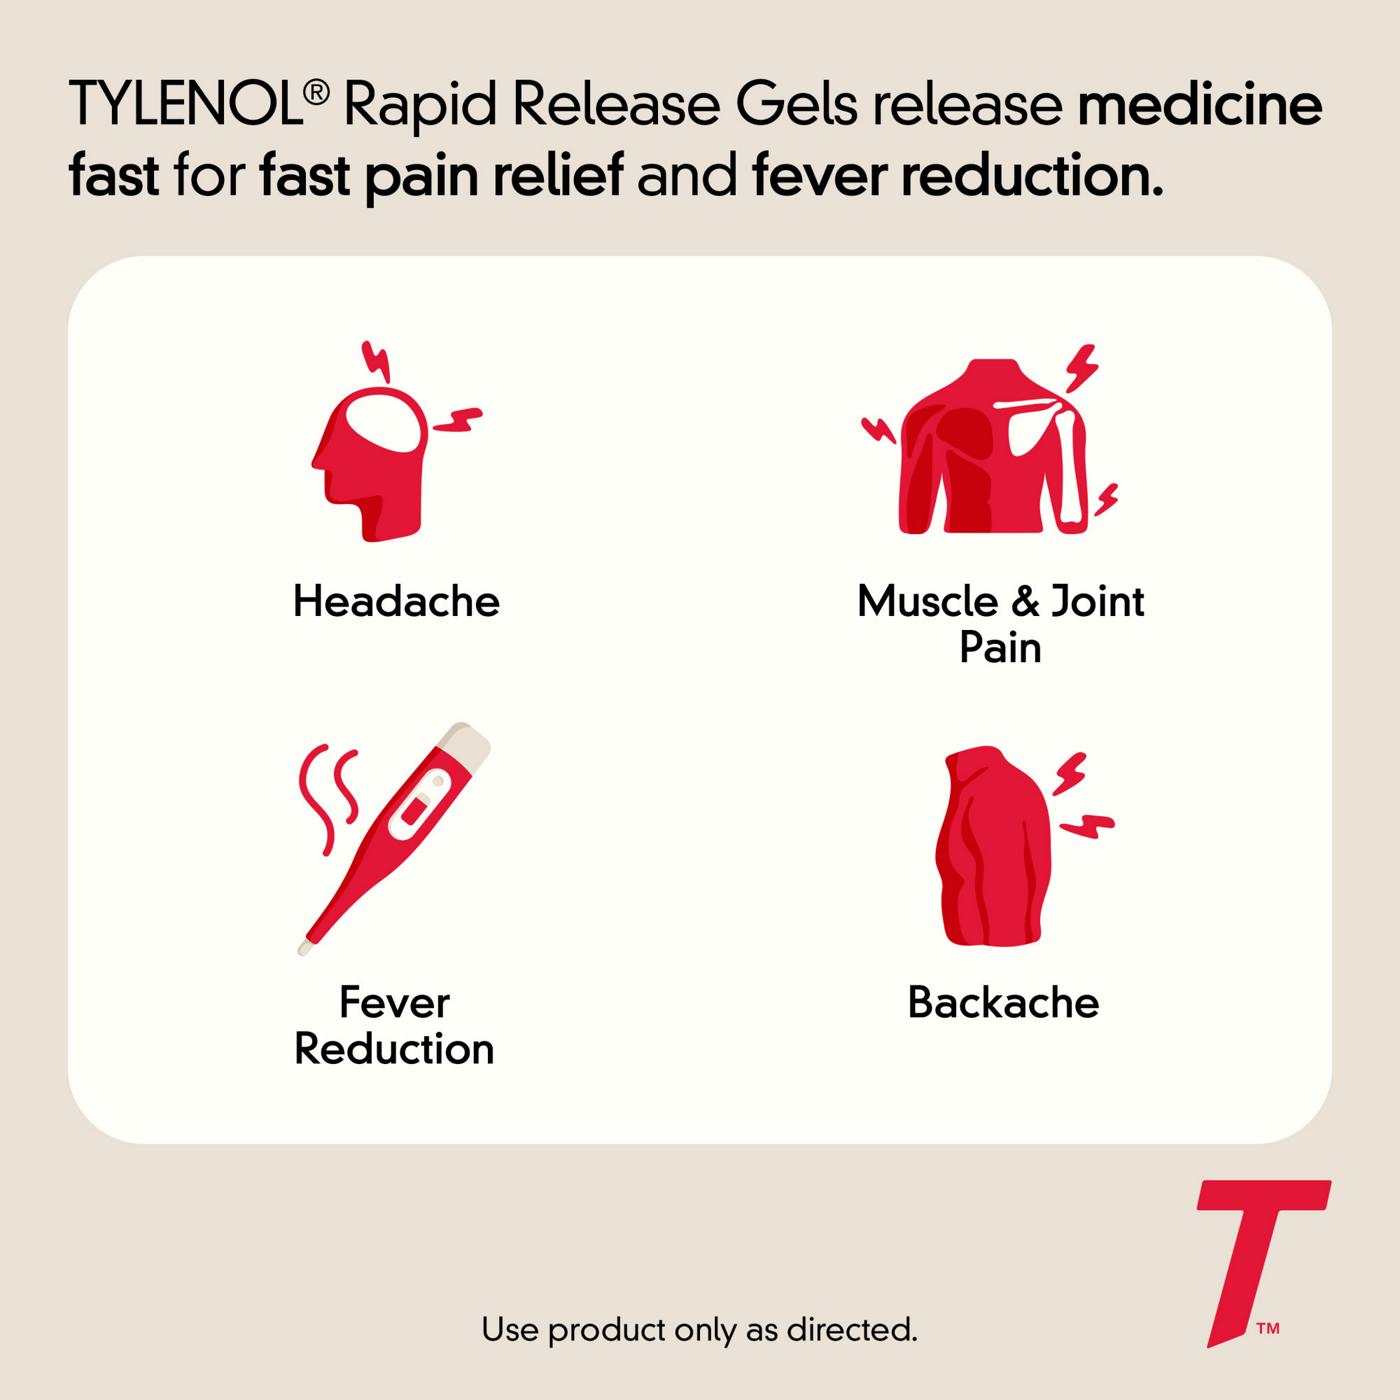 Tylenol Rapid Release Gels; image 2 of 6